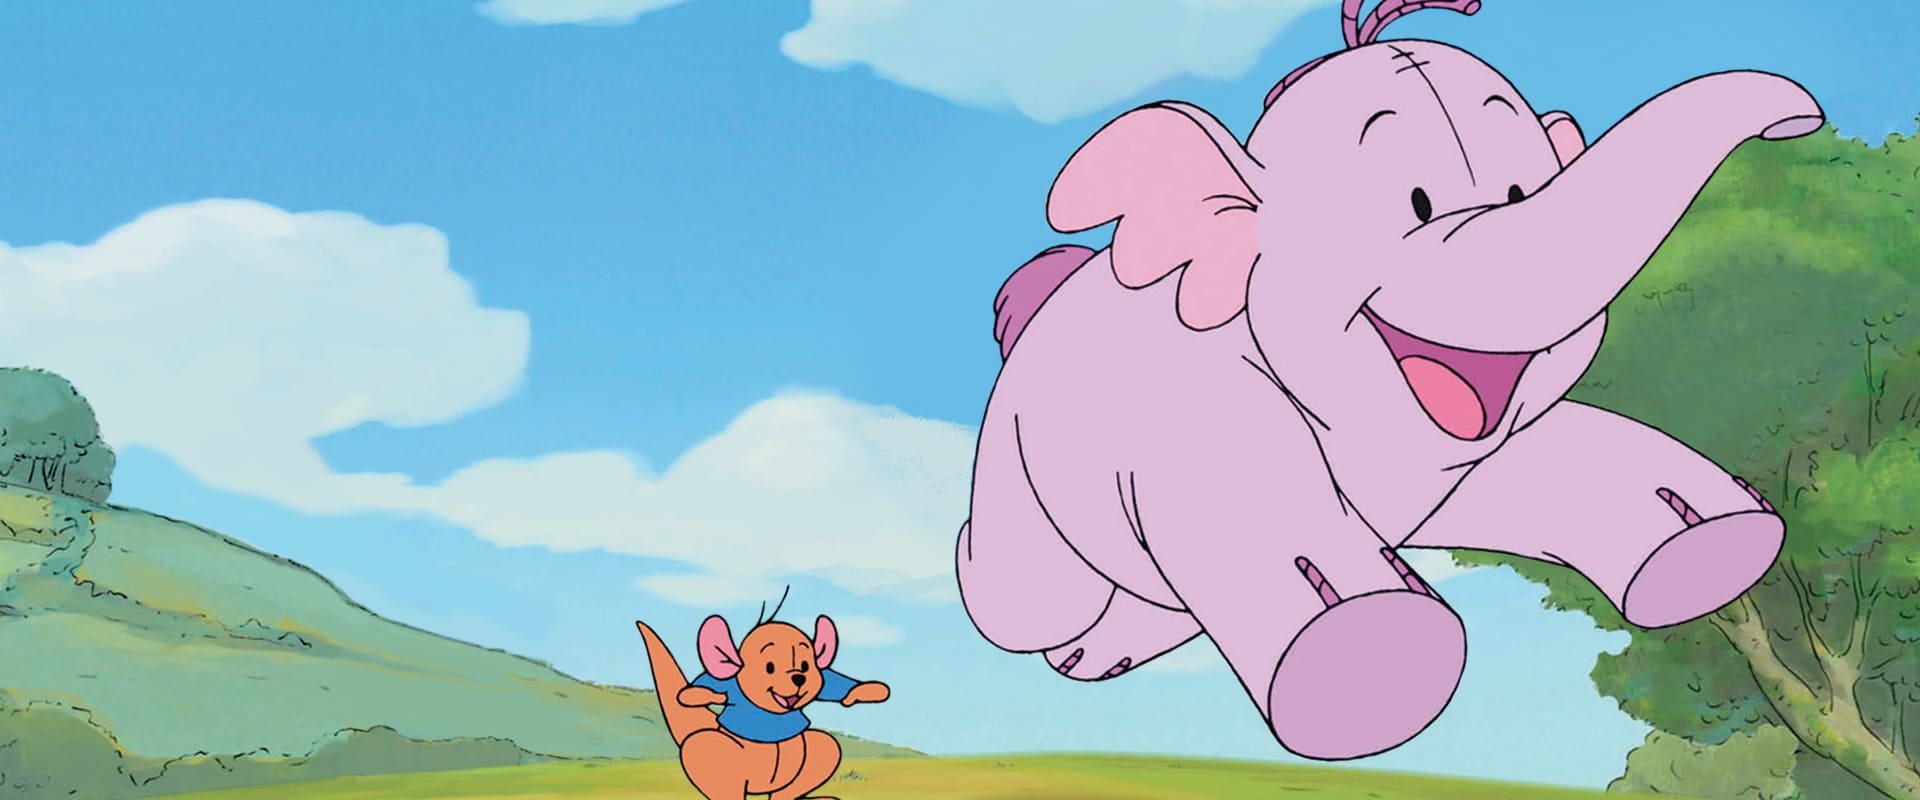 Minik Fil Heffalump./ Pooh'un Heffalump Filmi./ Pooh's Heffalump Movie